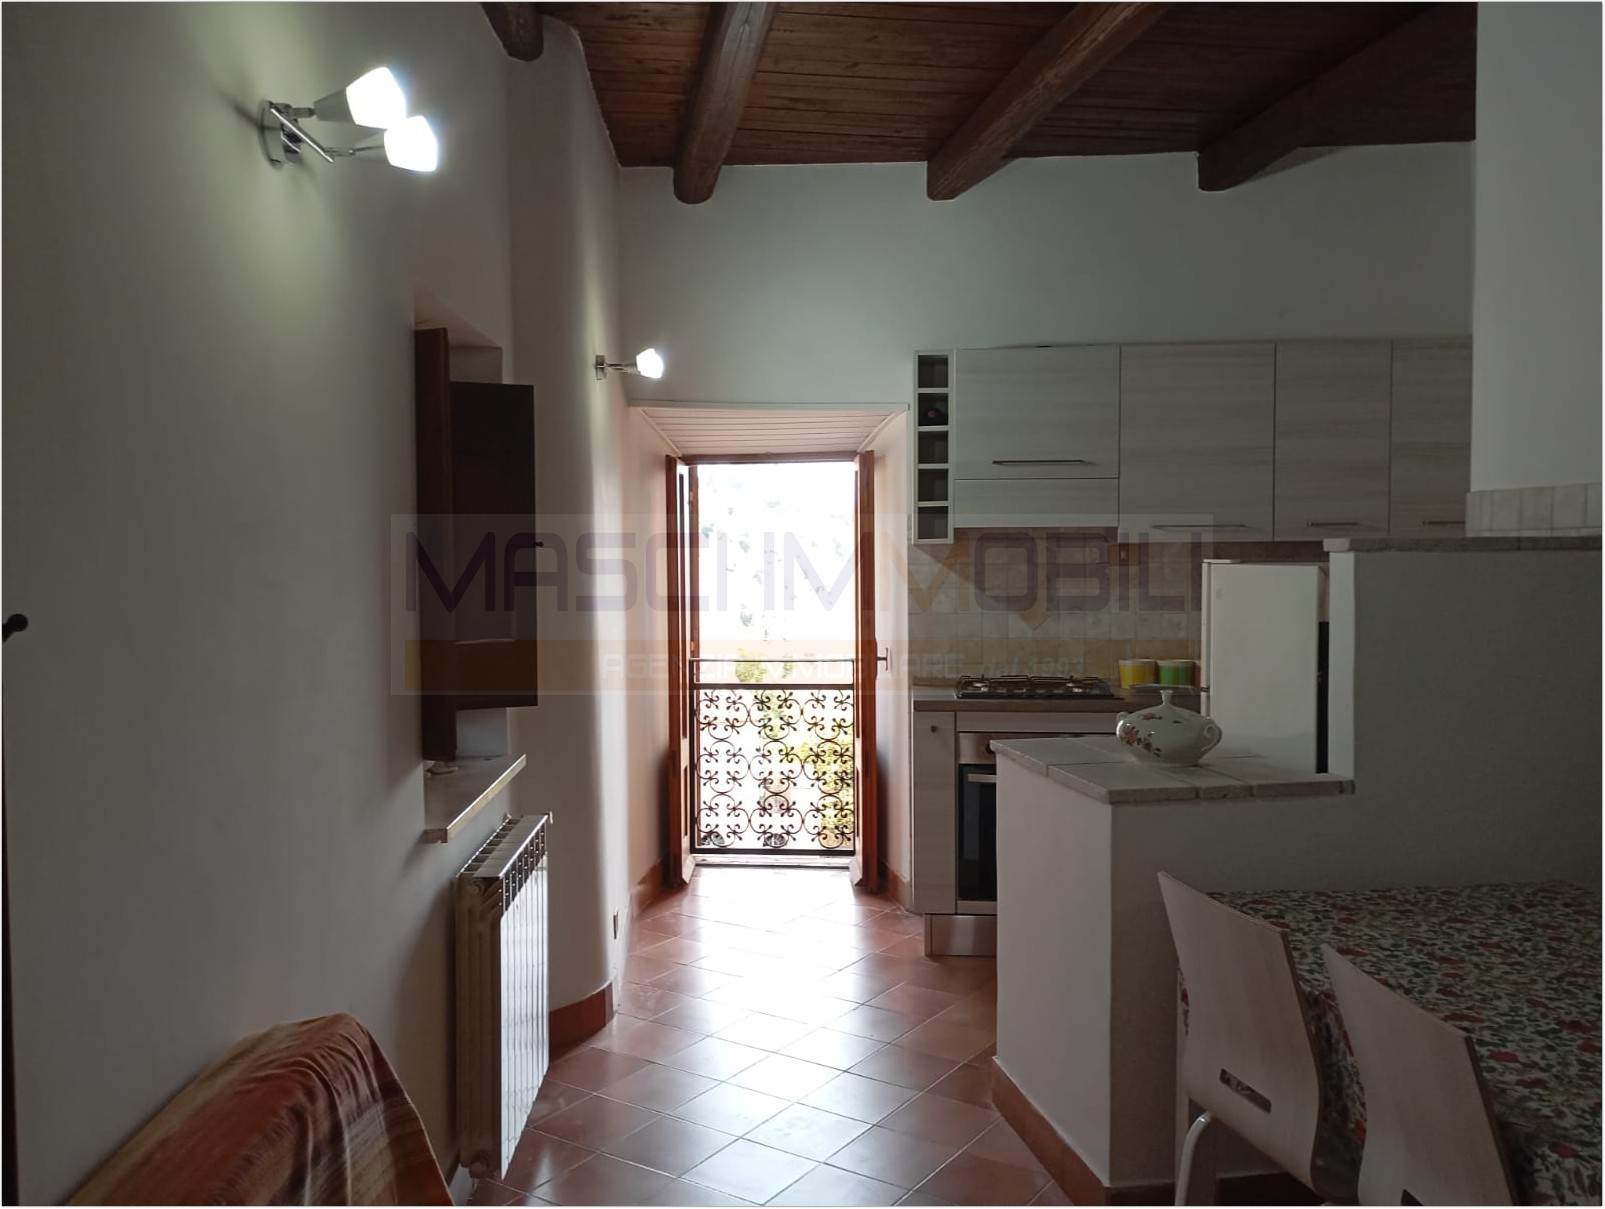 Appartamento in vendita a Nazzano, 2 locali, prezzo € 30.000 | PortaleAgenzieImmobiliari.it